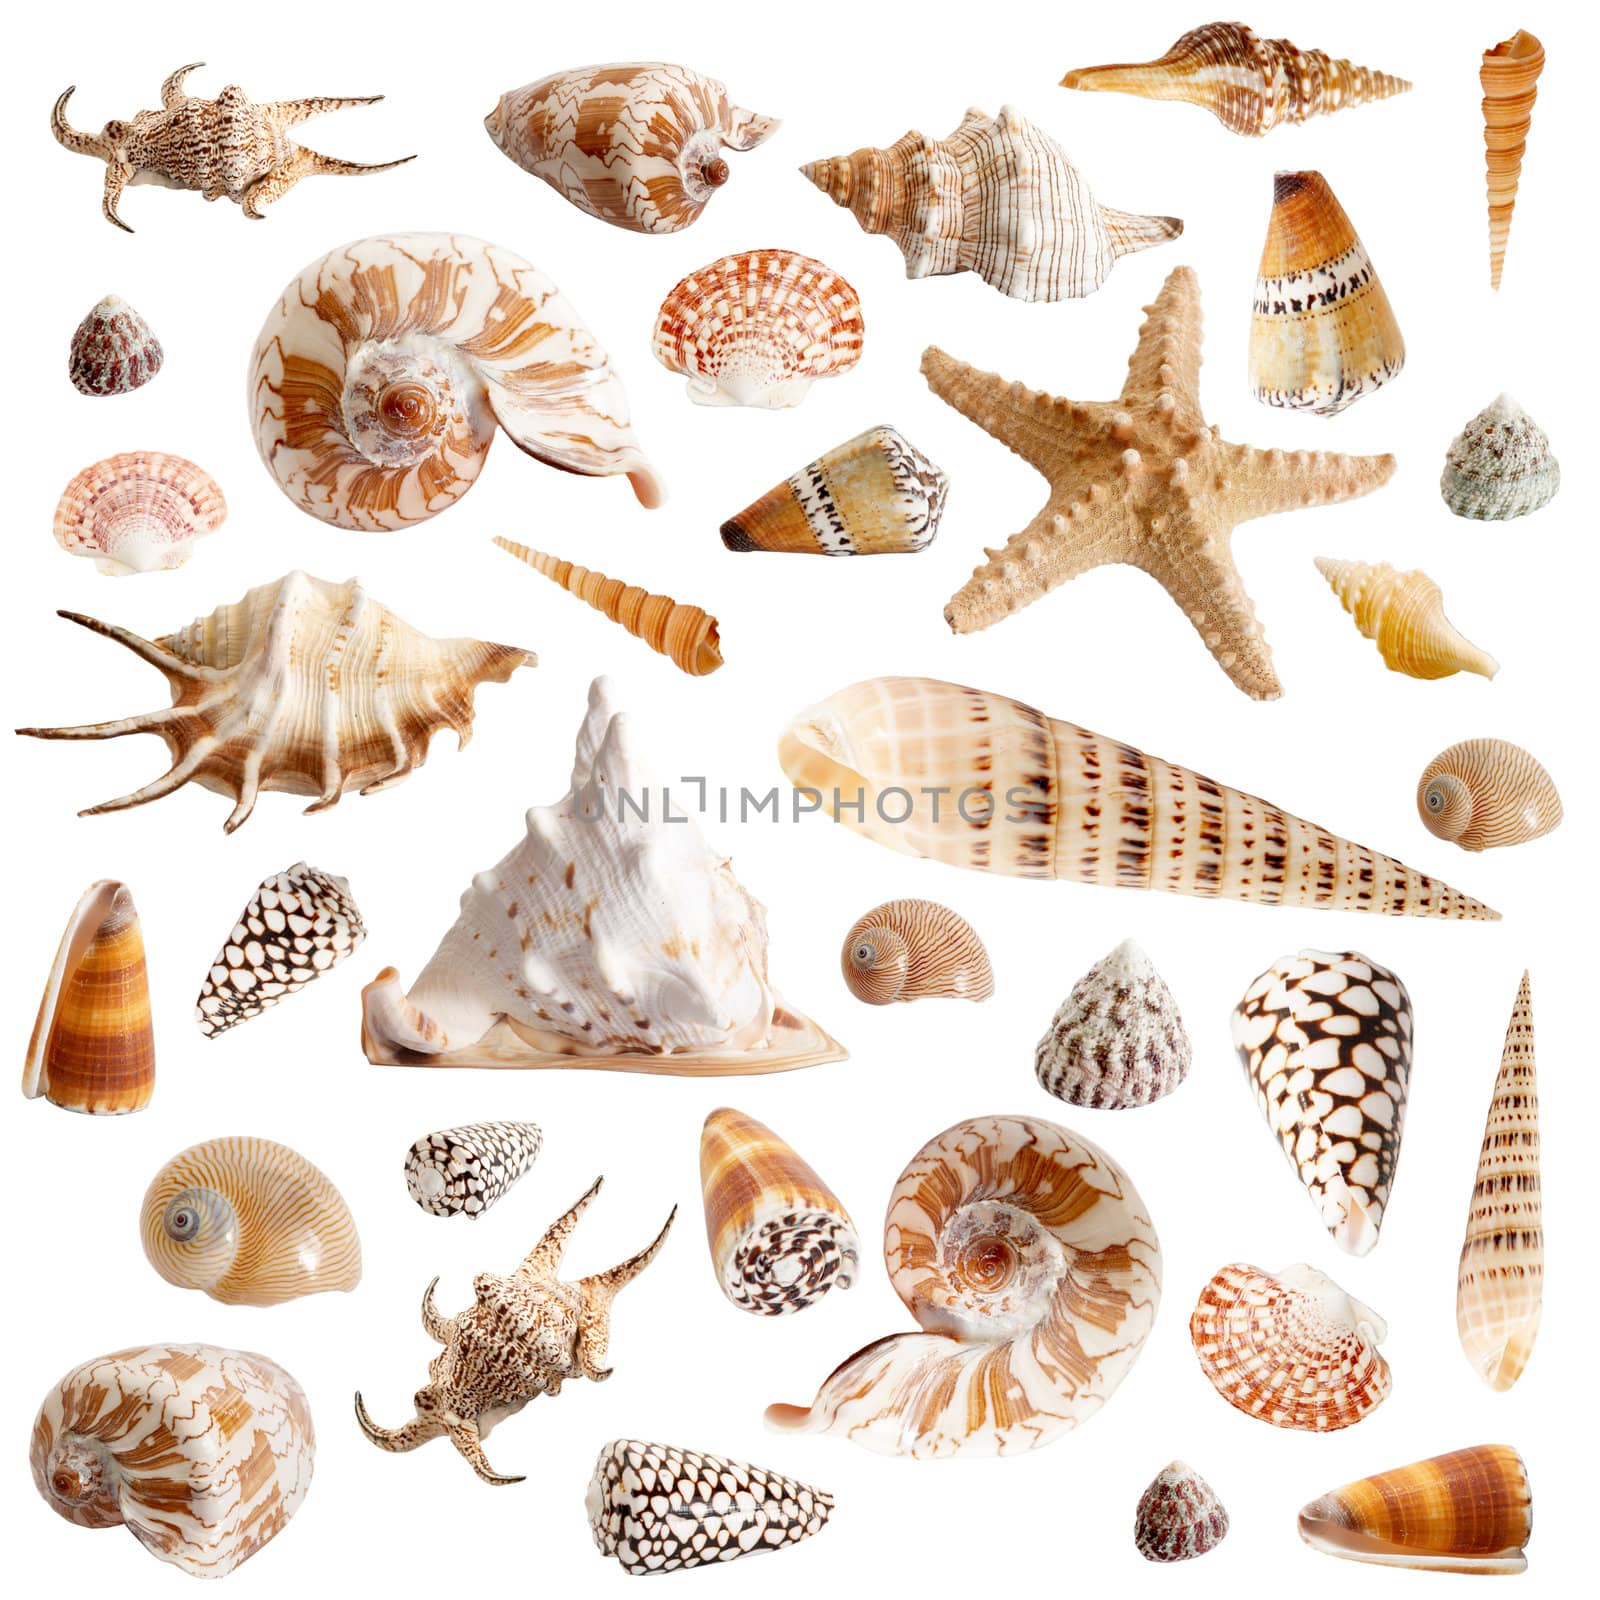 Many seashells by velkol